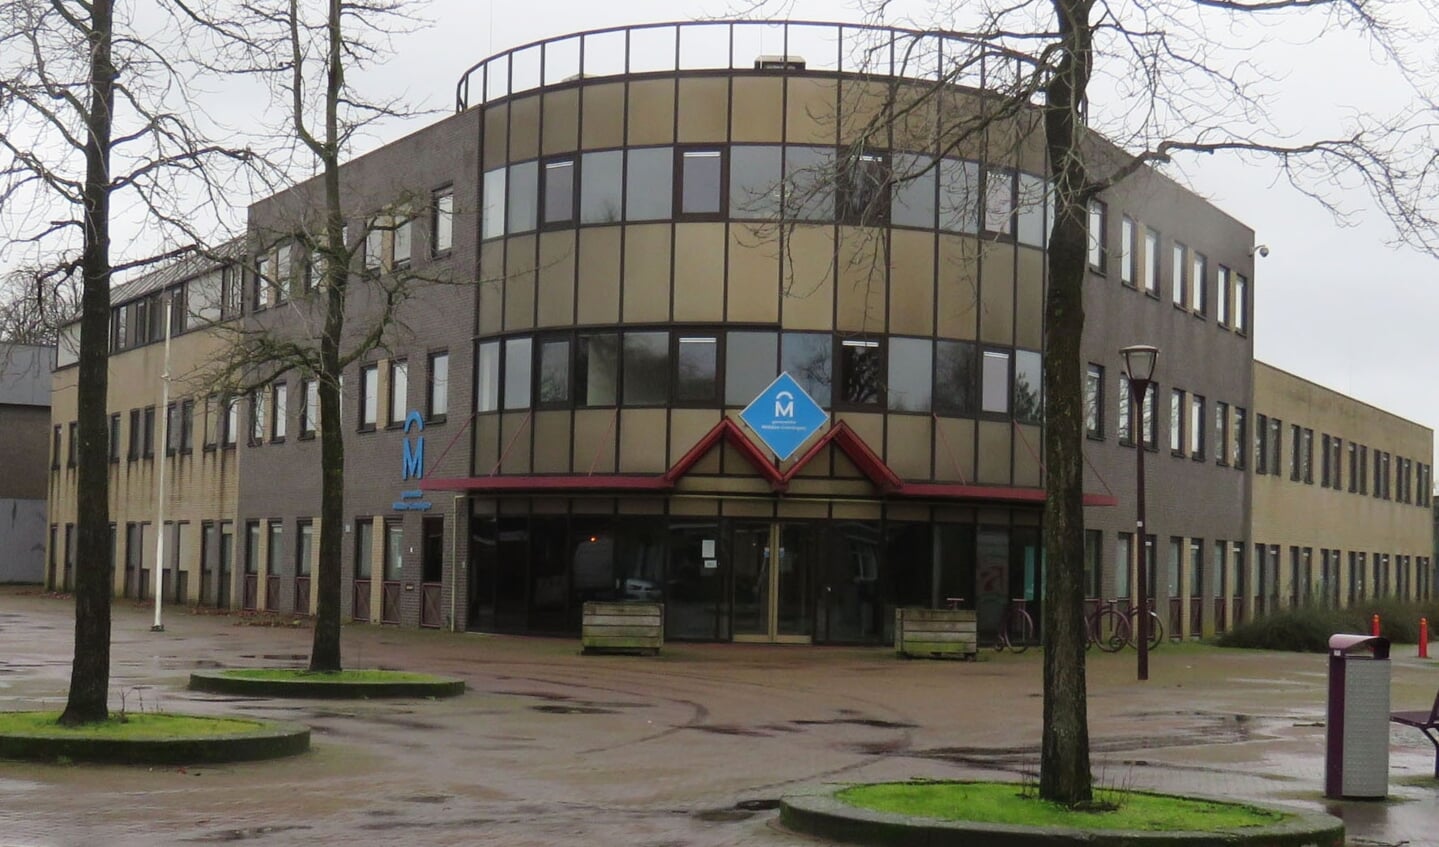 Het voormalige gemeentehuis in Muntendam wordt in gereedheid gebracht voor de opvang van vluchtelingen.